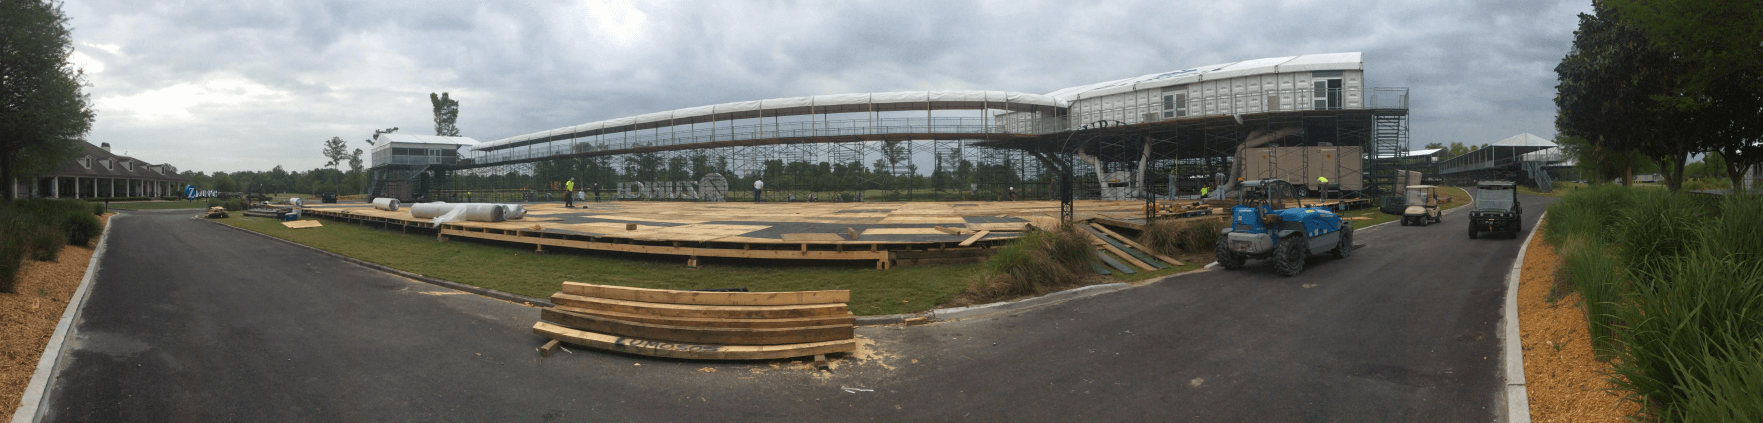 Construction at TPC Louisiana